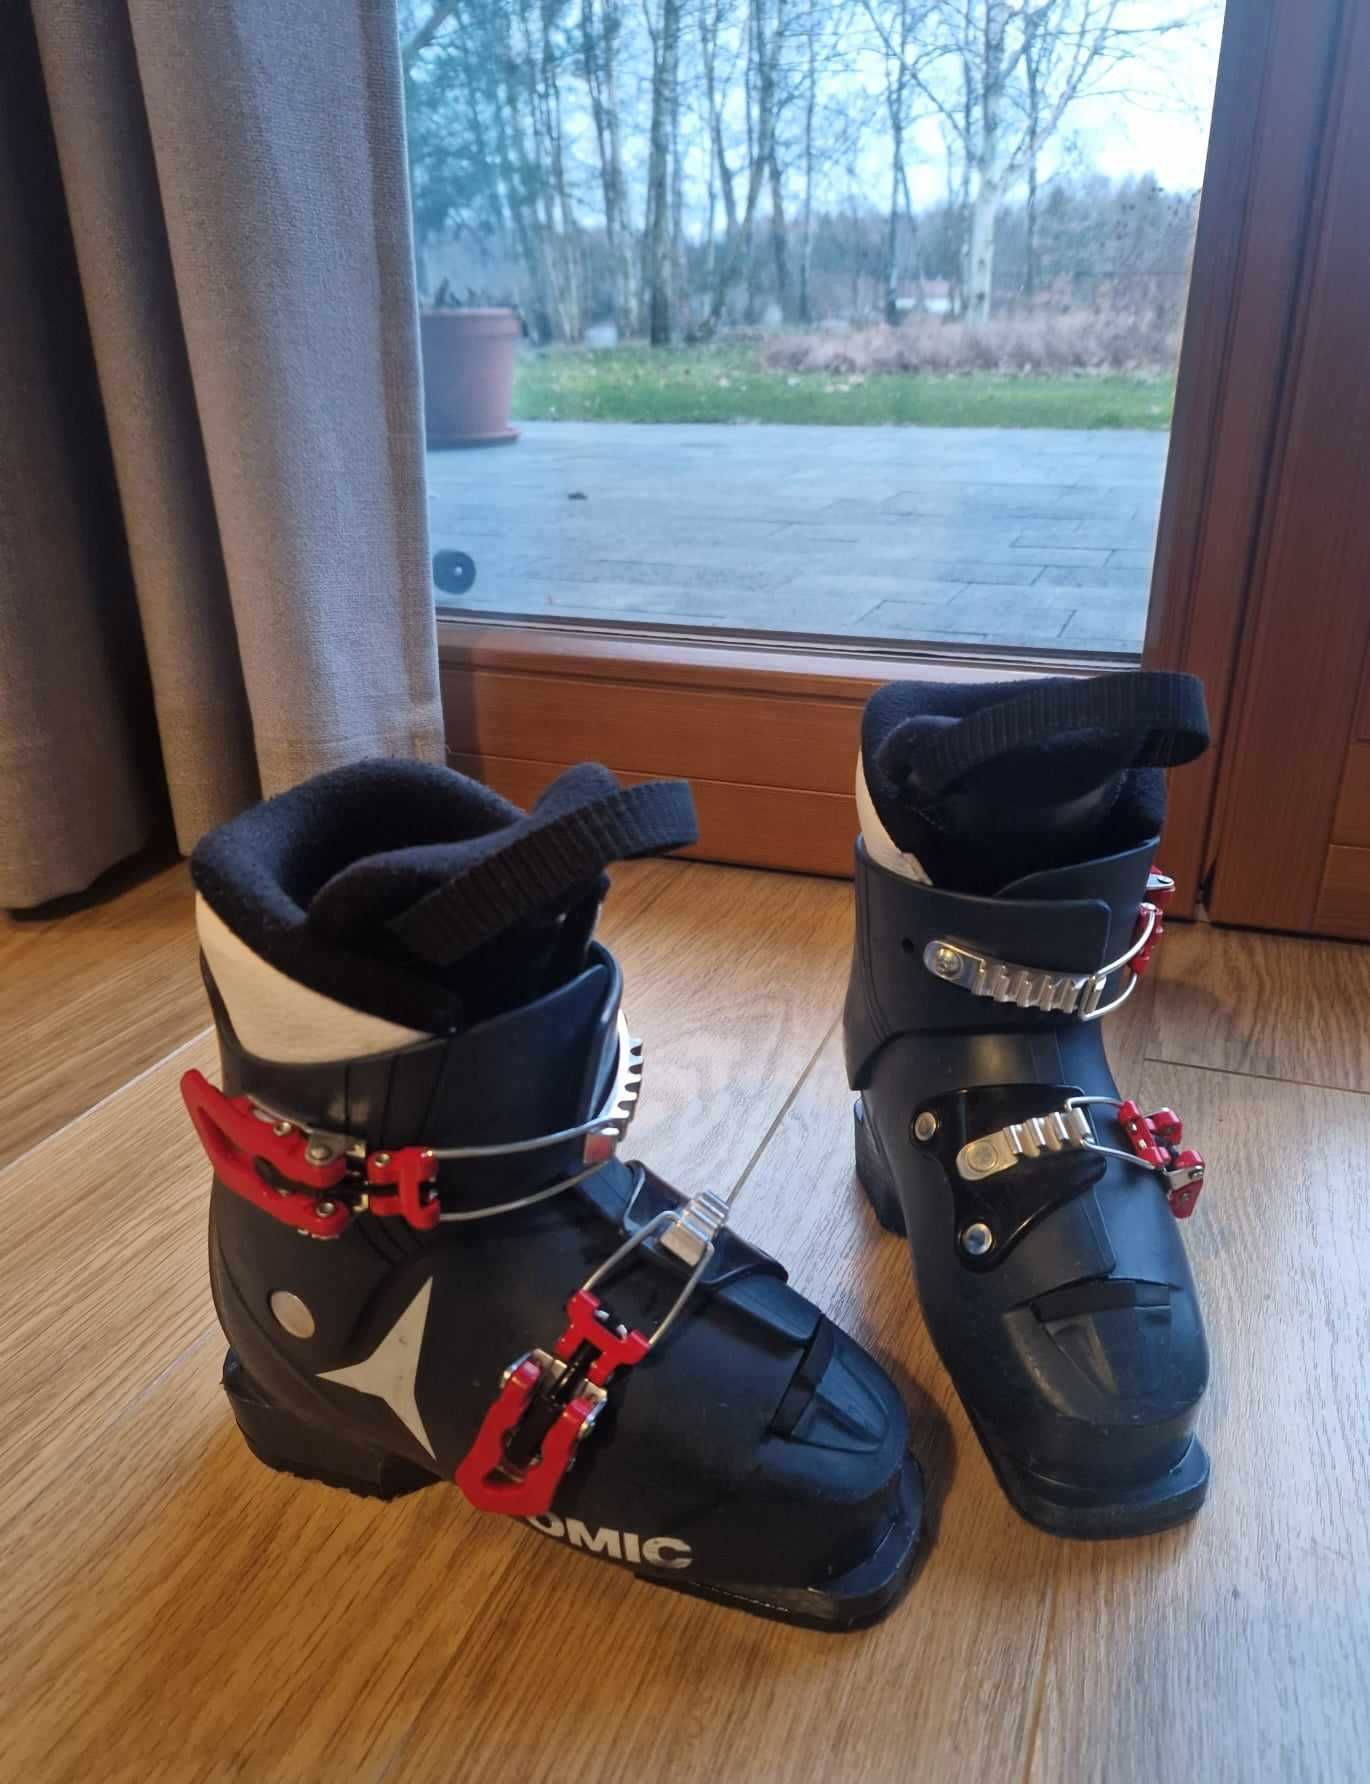 Buty narciarskie dziecięce Atomic Hawx JR2 rozmiar 19.0/19.5